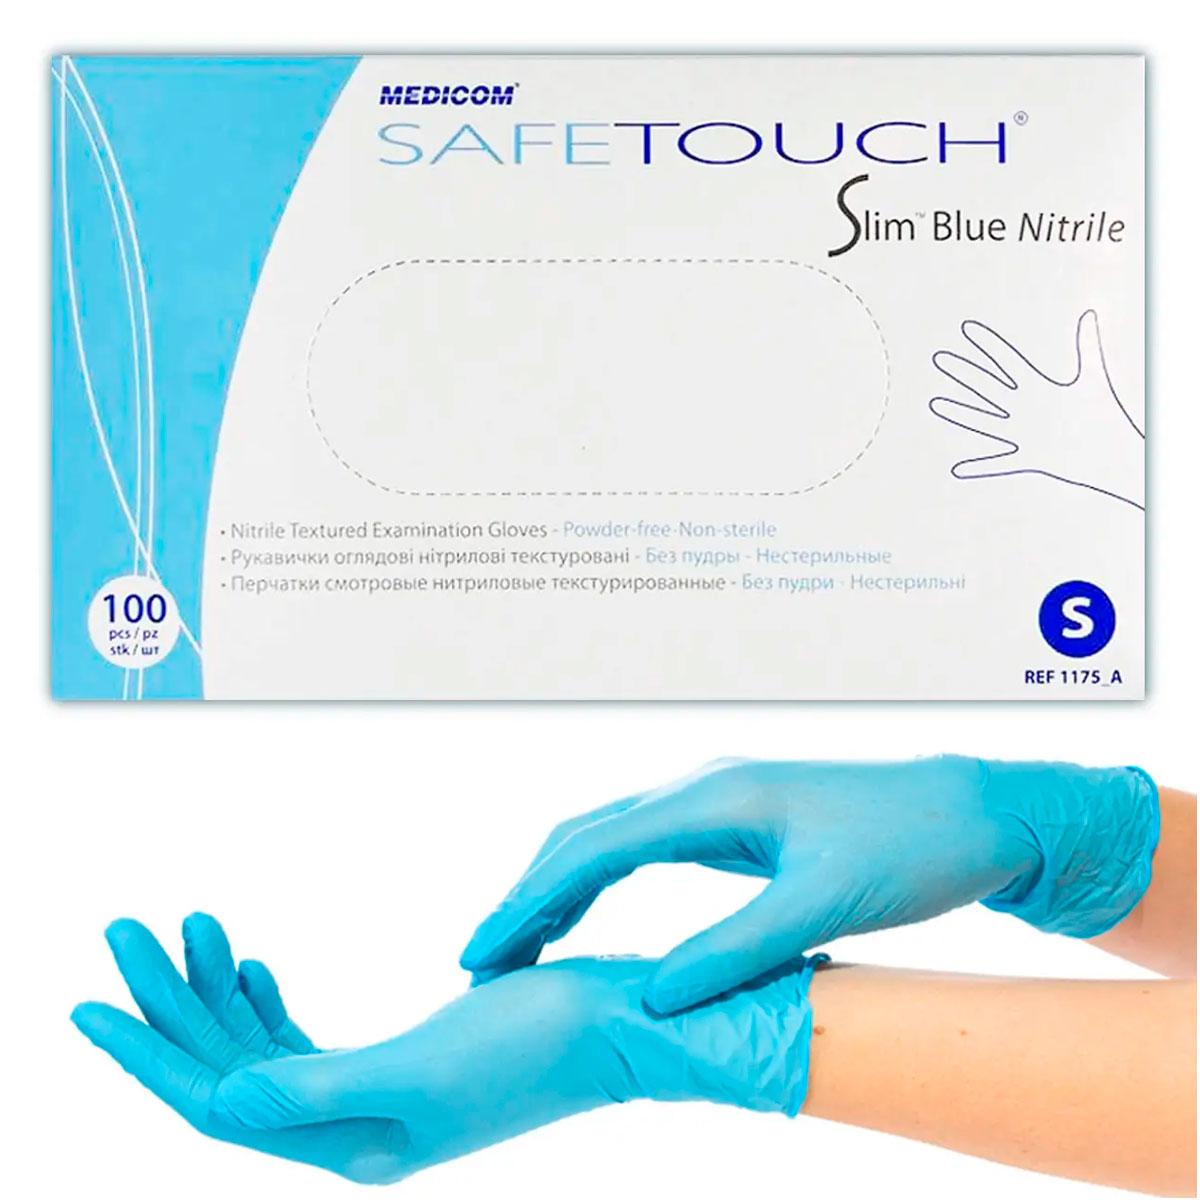 Нітрилові рукавички Medicom Safe Touch Slim Blue Nitrile S, 100 шт